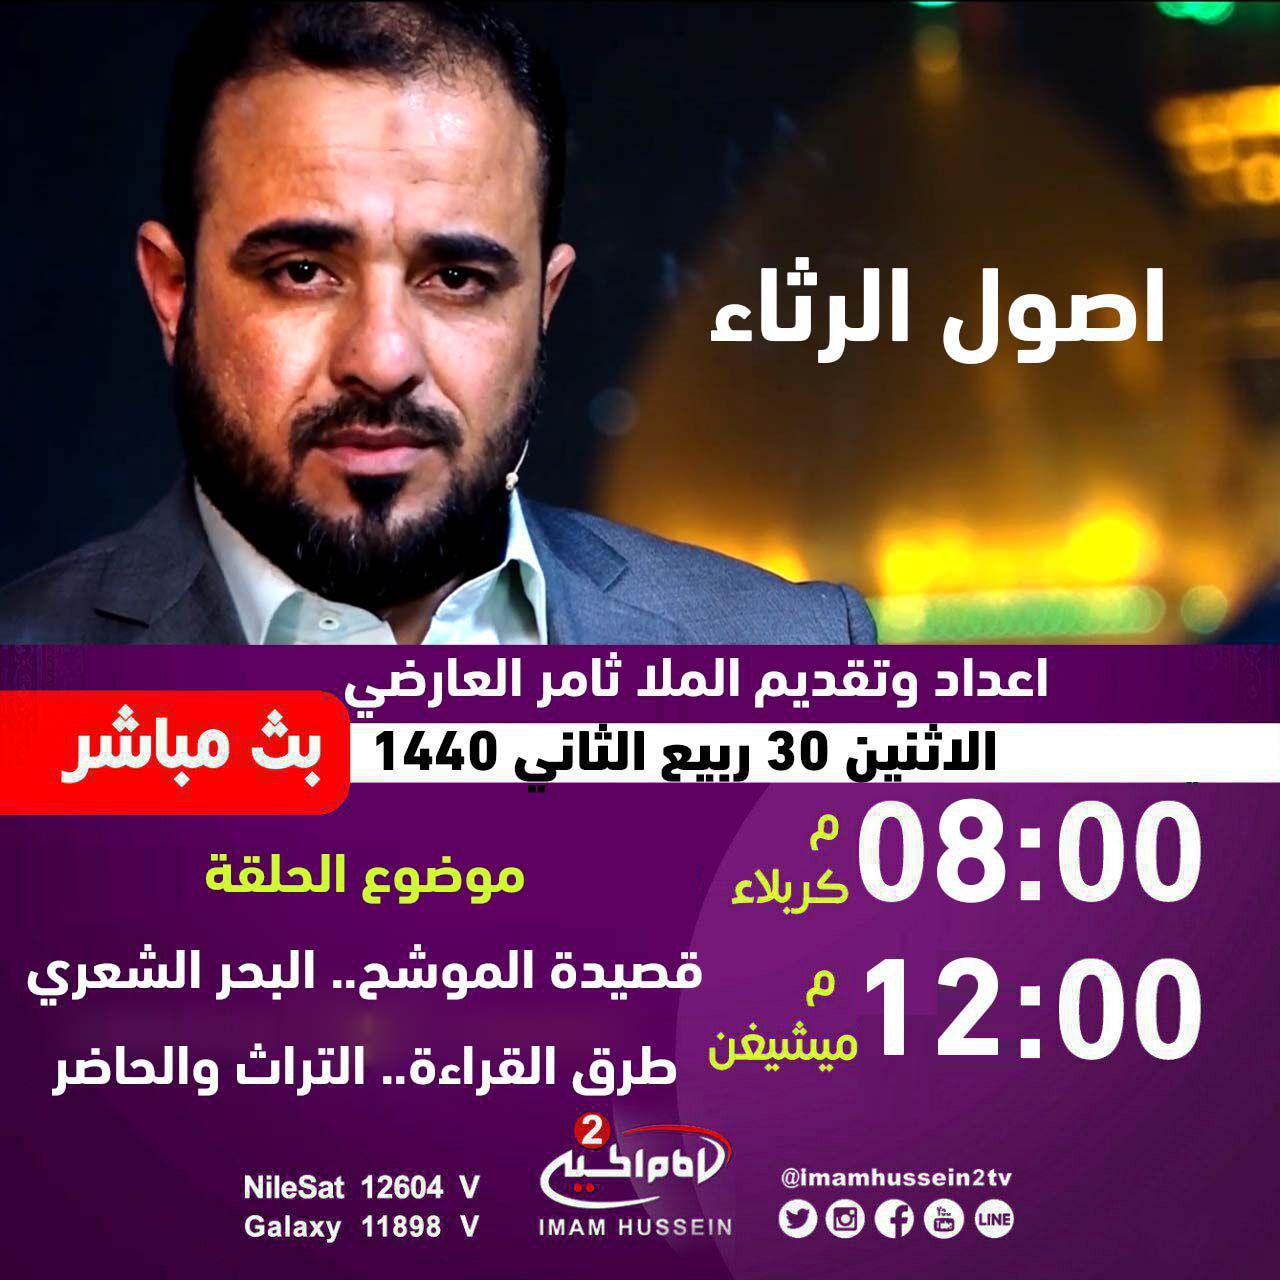 صورة عرض برنامج اصول الرثاء على قناة الامام الحسين عليه السلام العربية الثانية